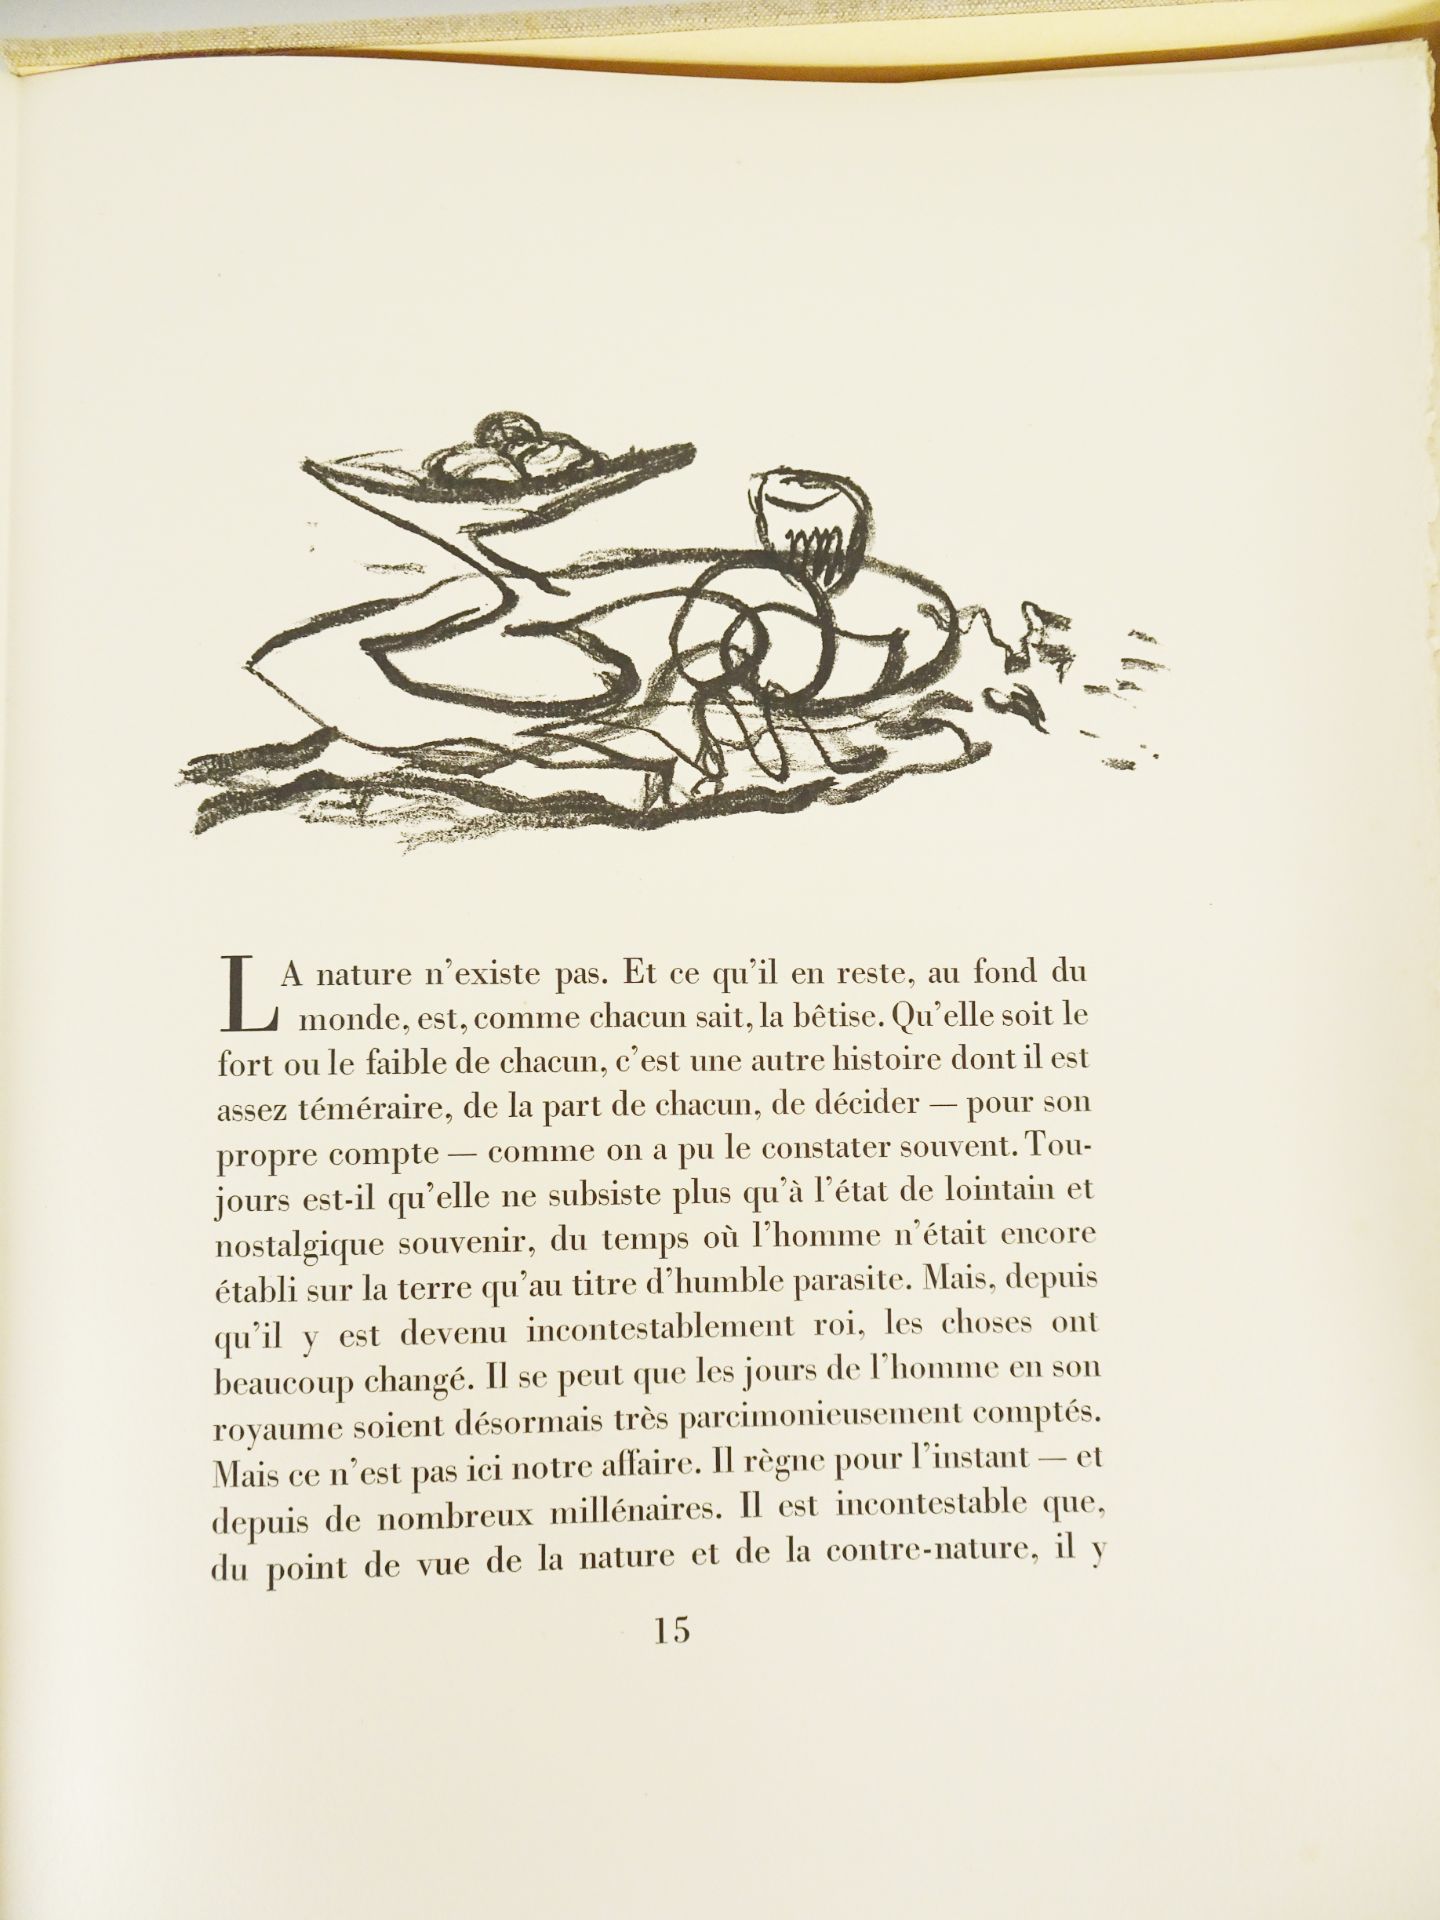 |Art| Braque George & REVERDY Pierre, "Une Aventure méthodique" - signé par l'artiste, 1950 - Image 8 of 17